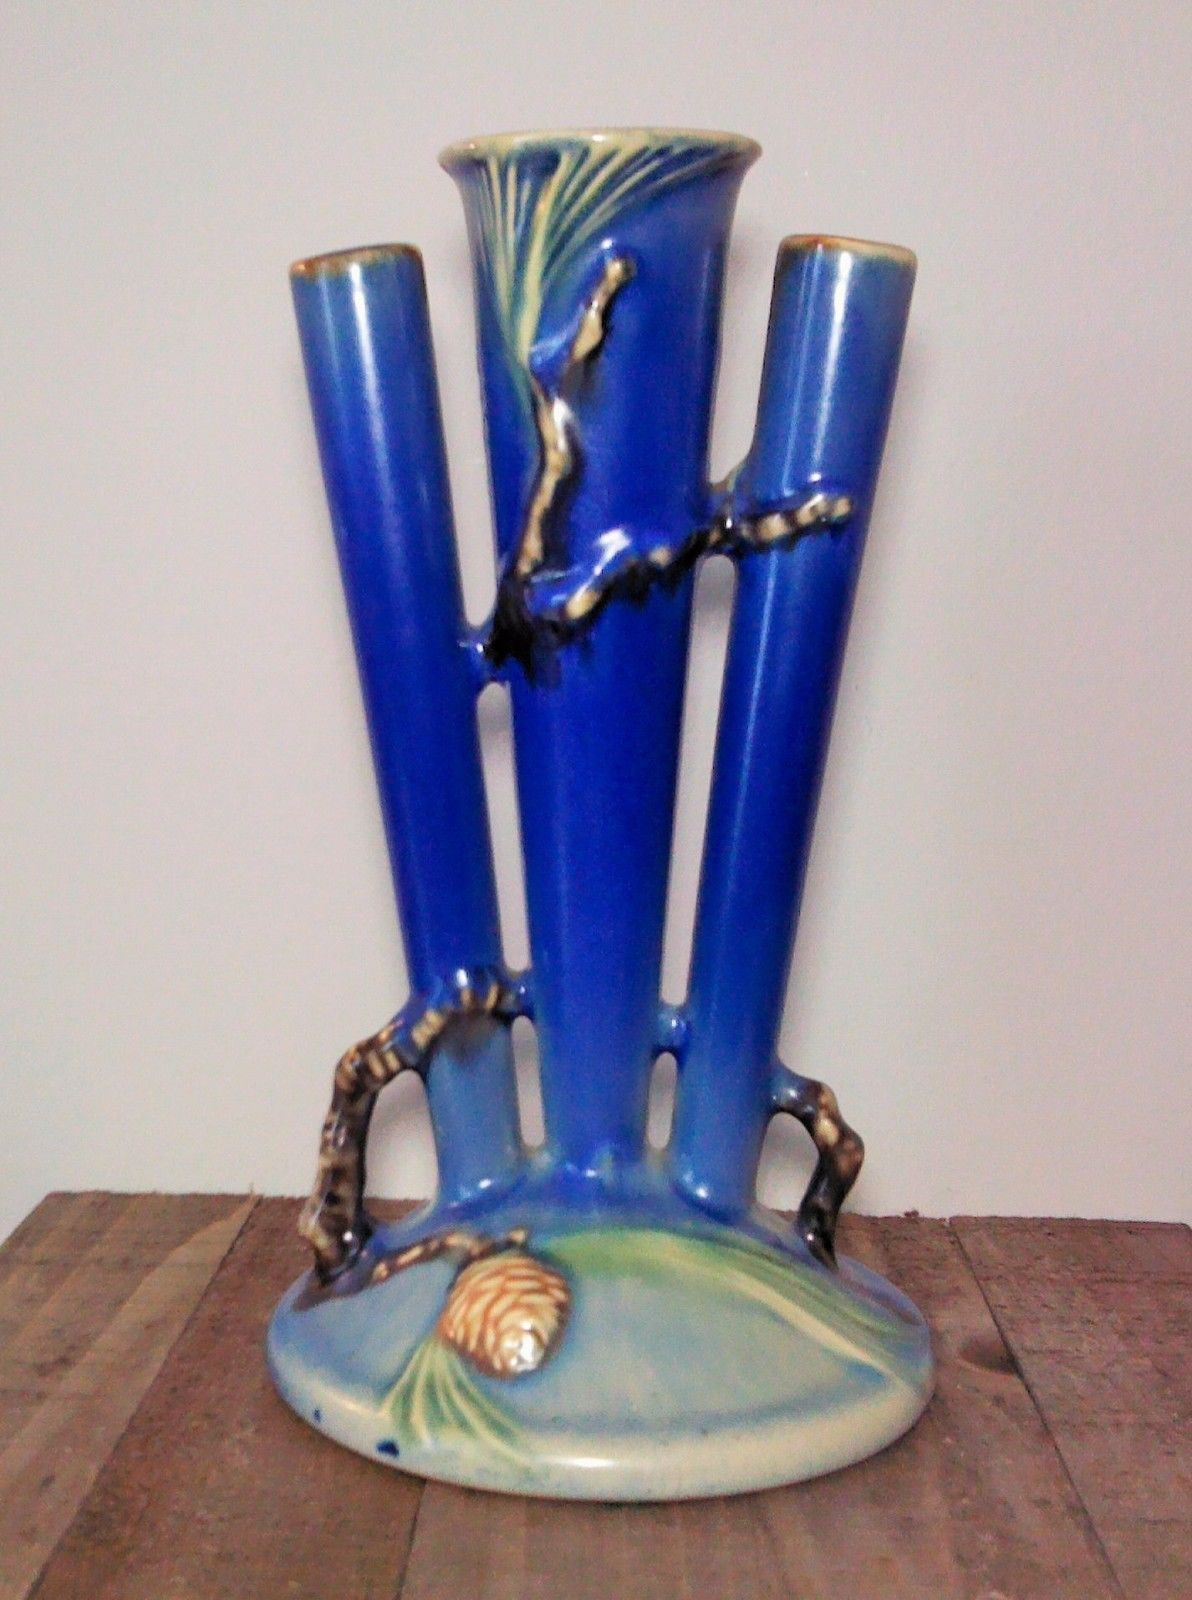 roseville antique vases of blue bud vase stock rare roseville blue pine cone triple bud vase throughout blue bud vase stock rare roseville blue pine cone triple bud vase 113 8 near mint